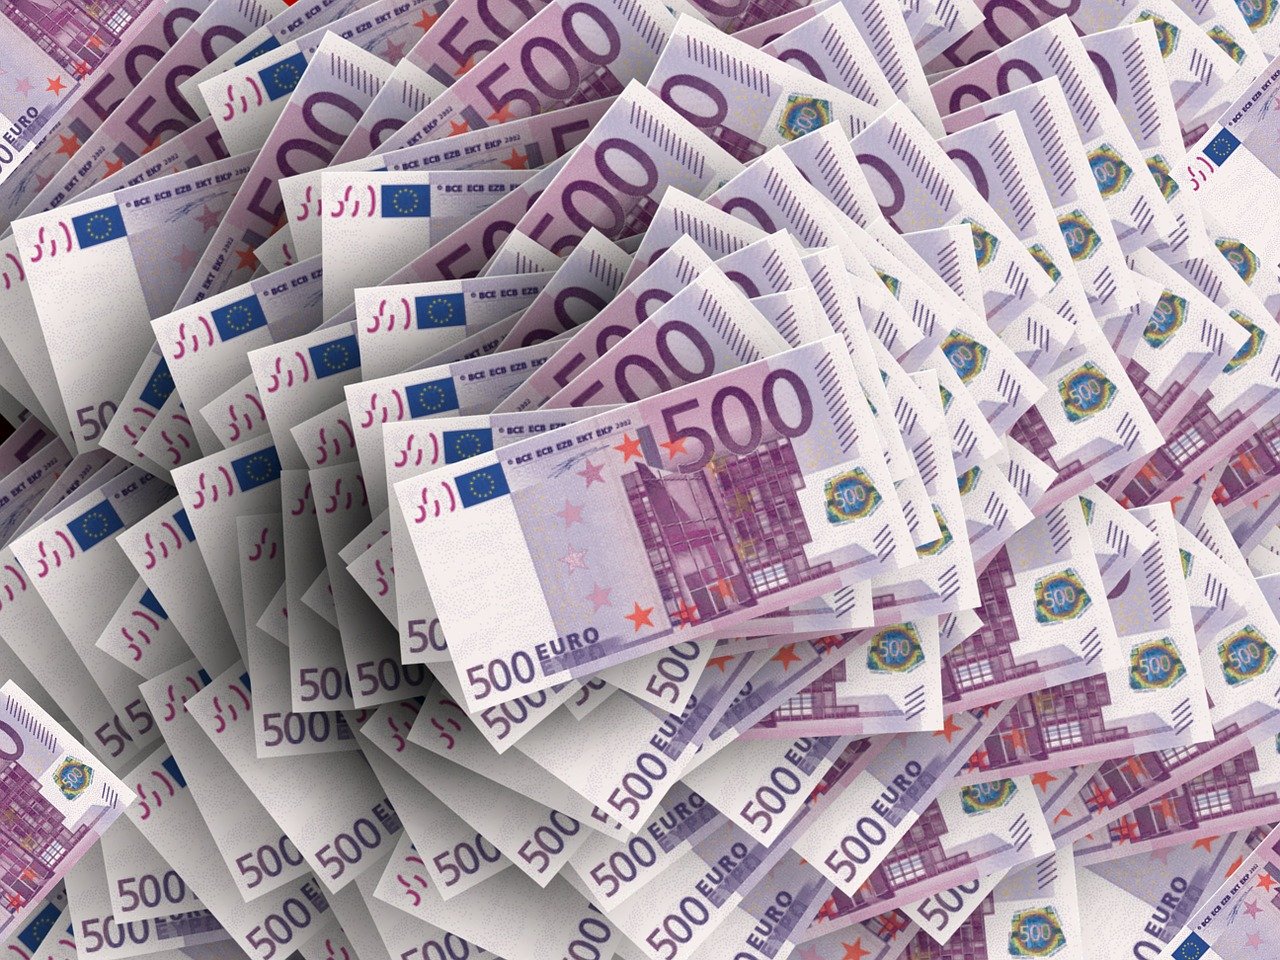 НБ доби уште речиси една година пристап до девизна ликвидност од 400 милиони евра преку репо-линијата на ЕЦБ